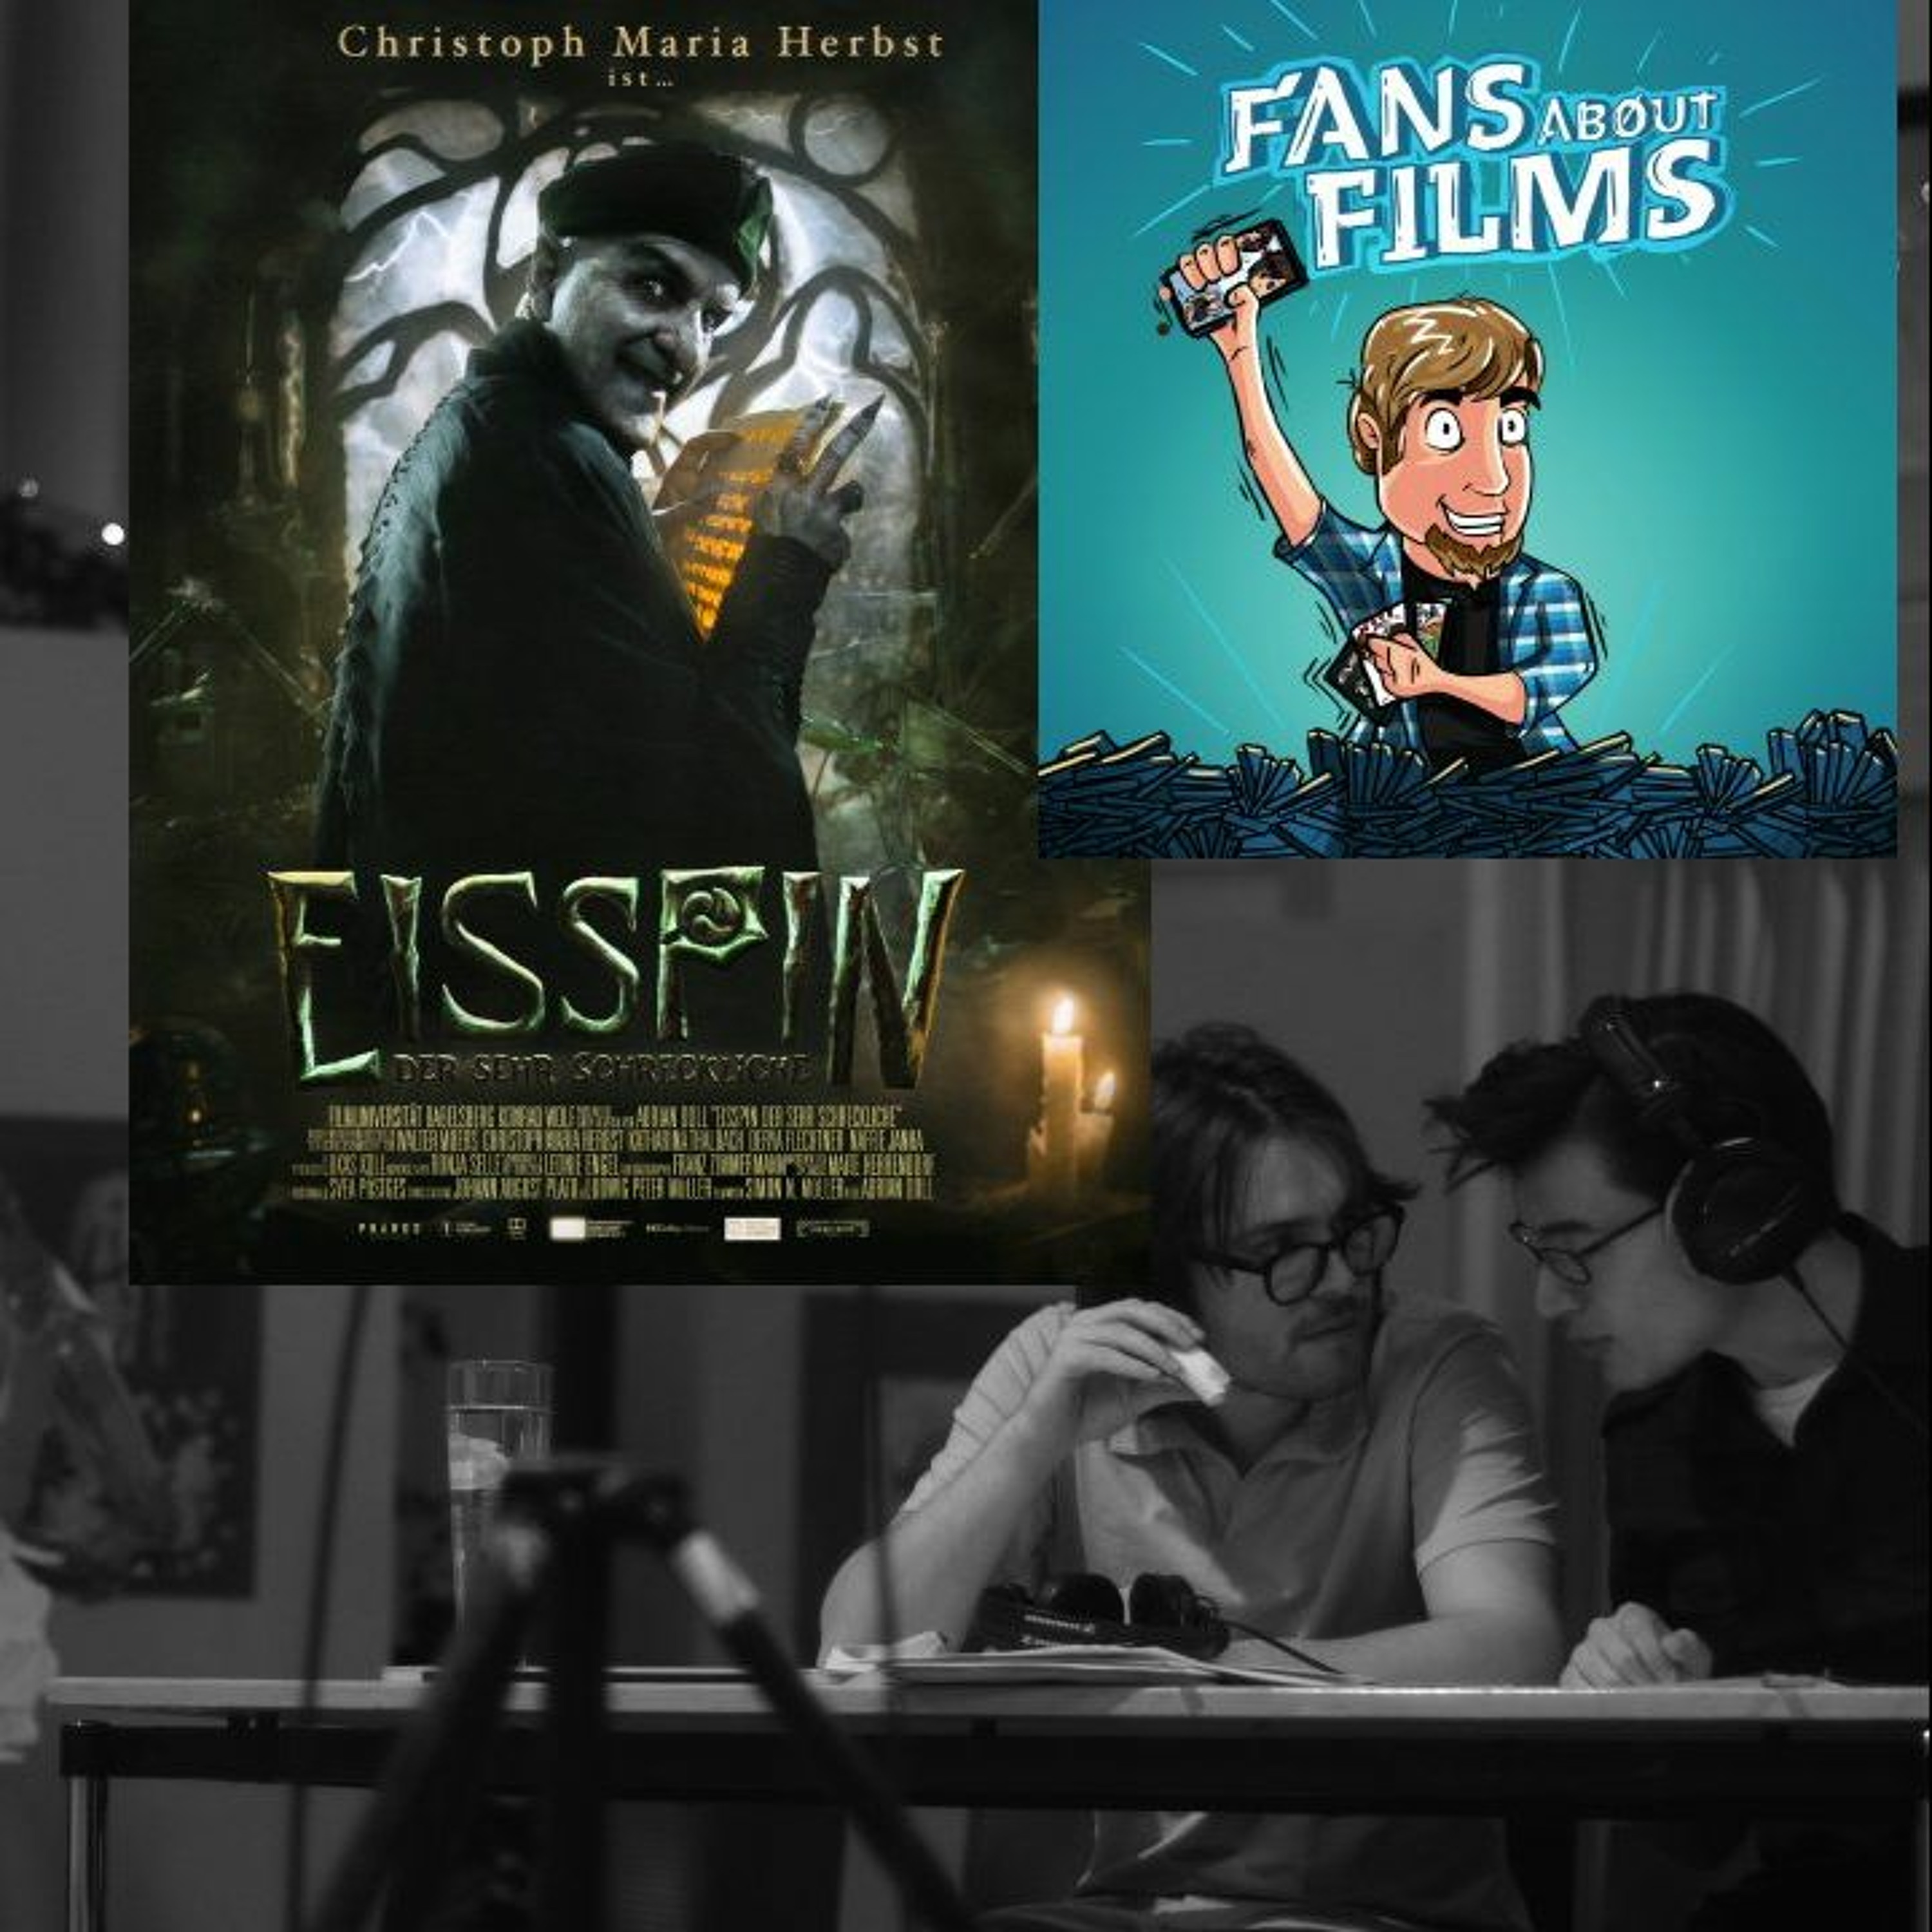 Fans About Films 46: Eisspin, der sehr Schreckliche - Interview mit Adrian Doll und Simon Müller